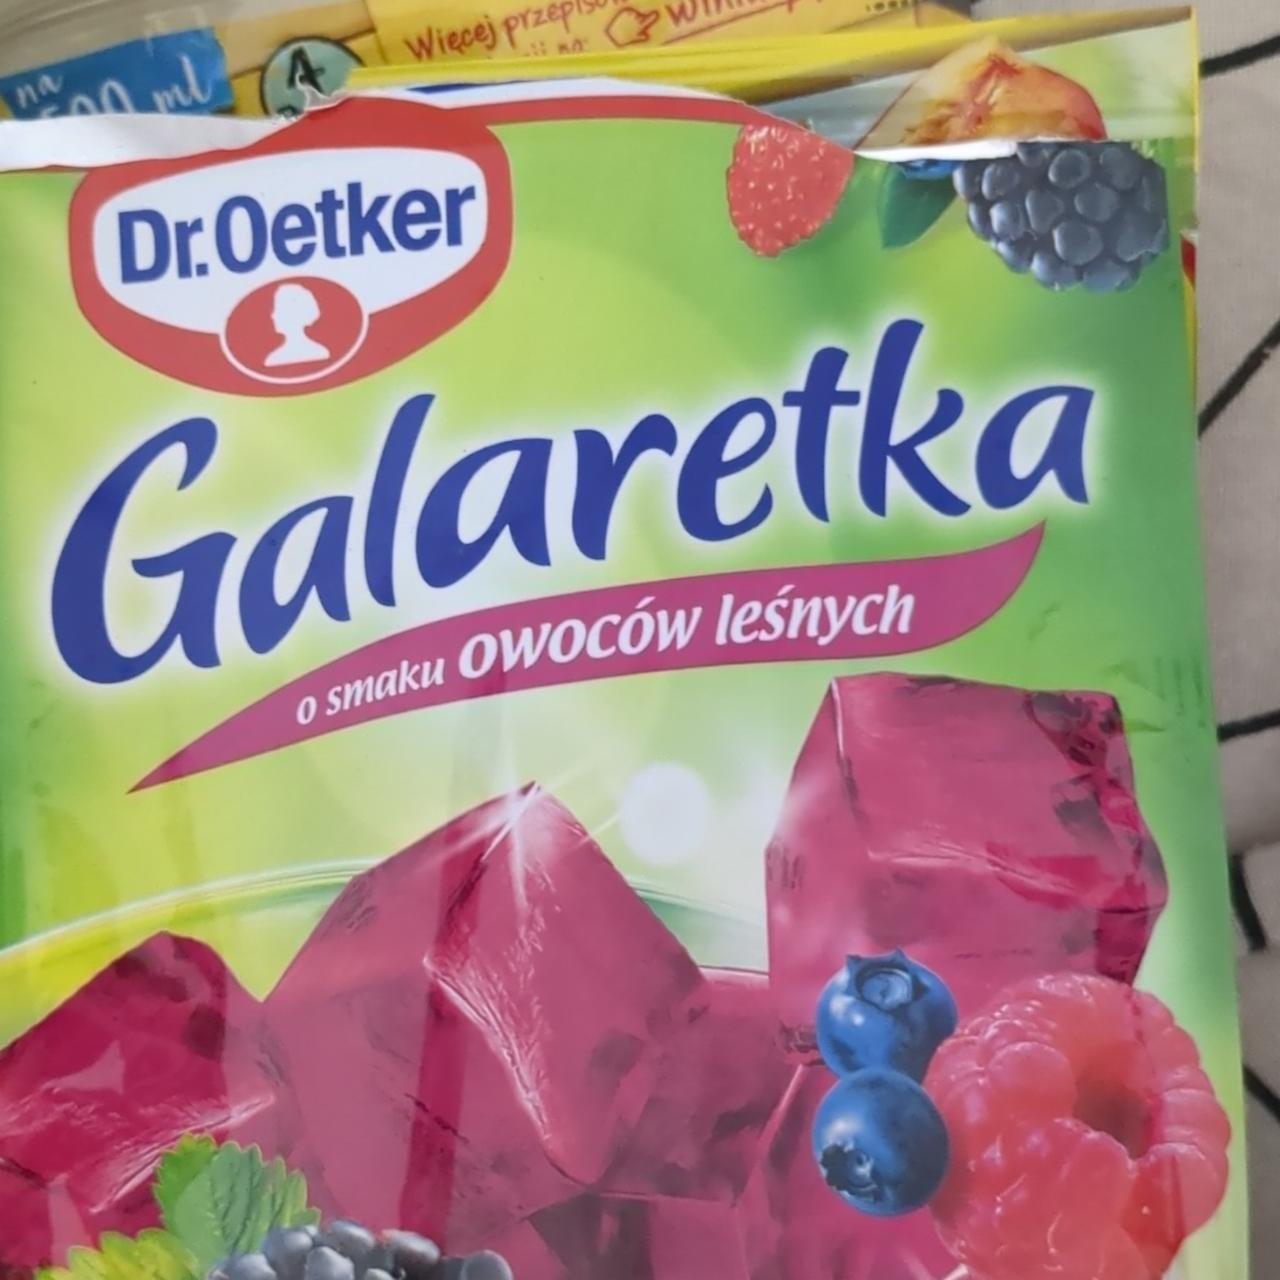 Фото - Желе со вкусом лесных ягод Galaretka Dr.Oetker